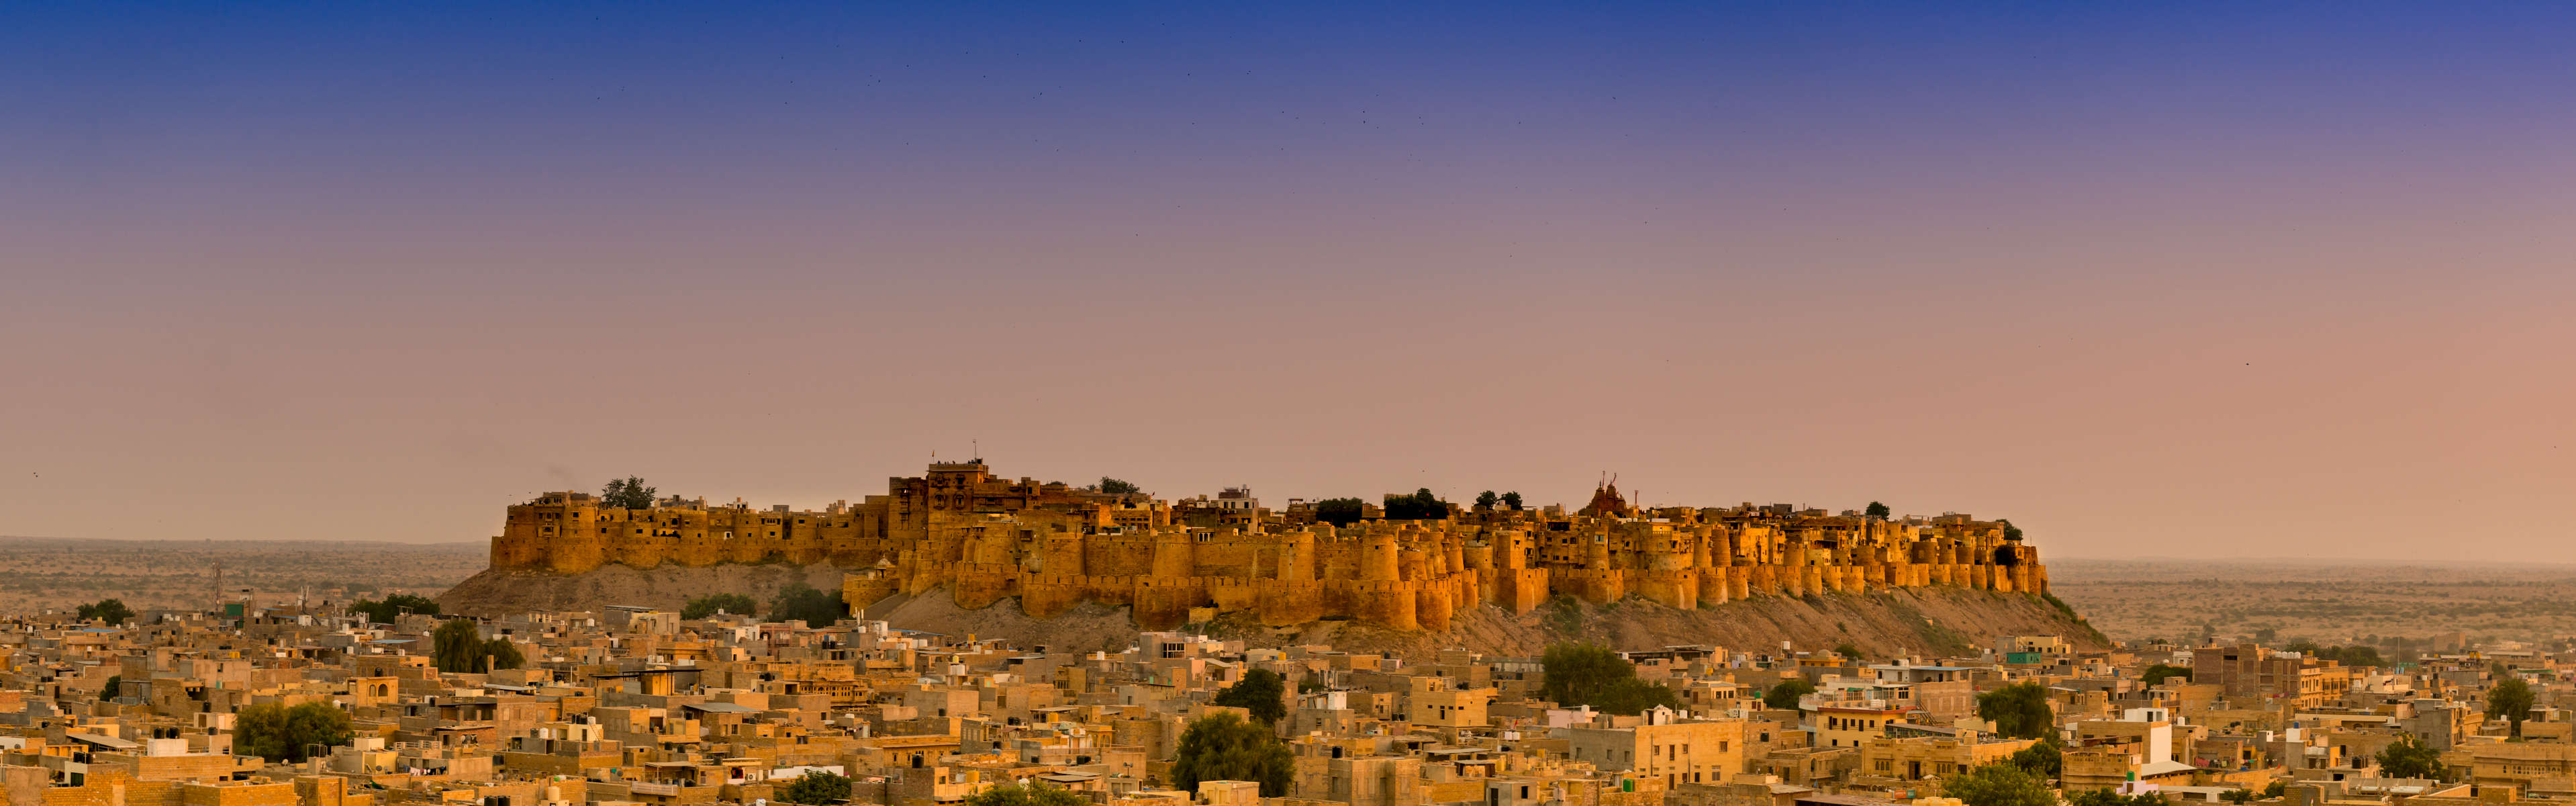 20161107-Jaisalmer-2016-1576